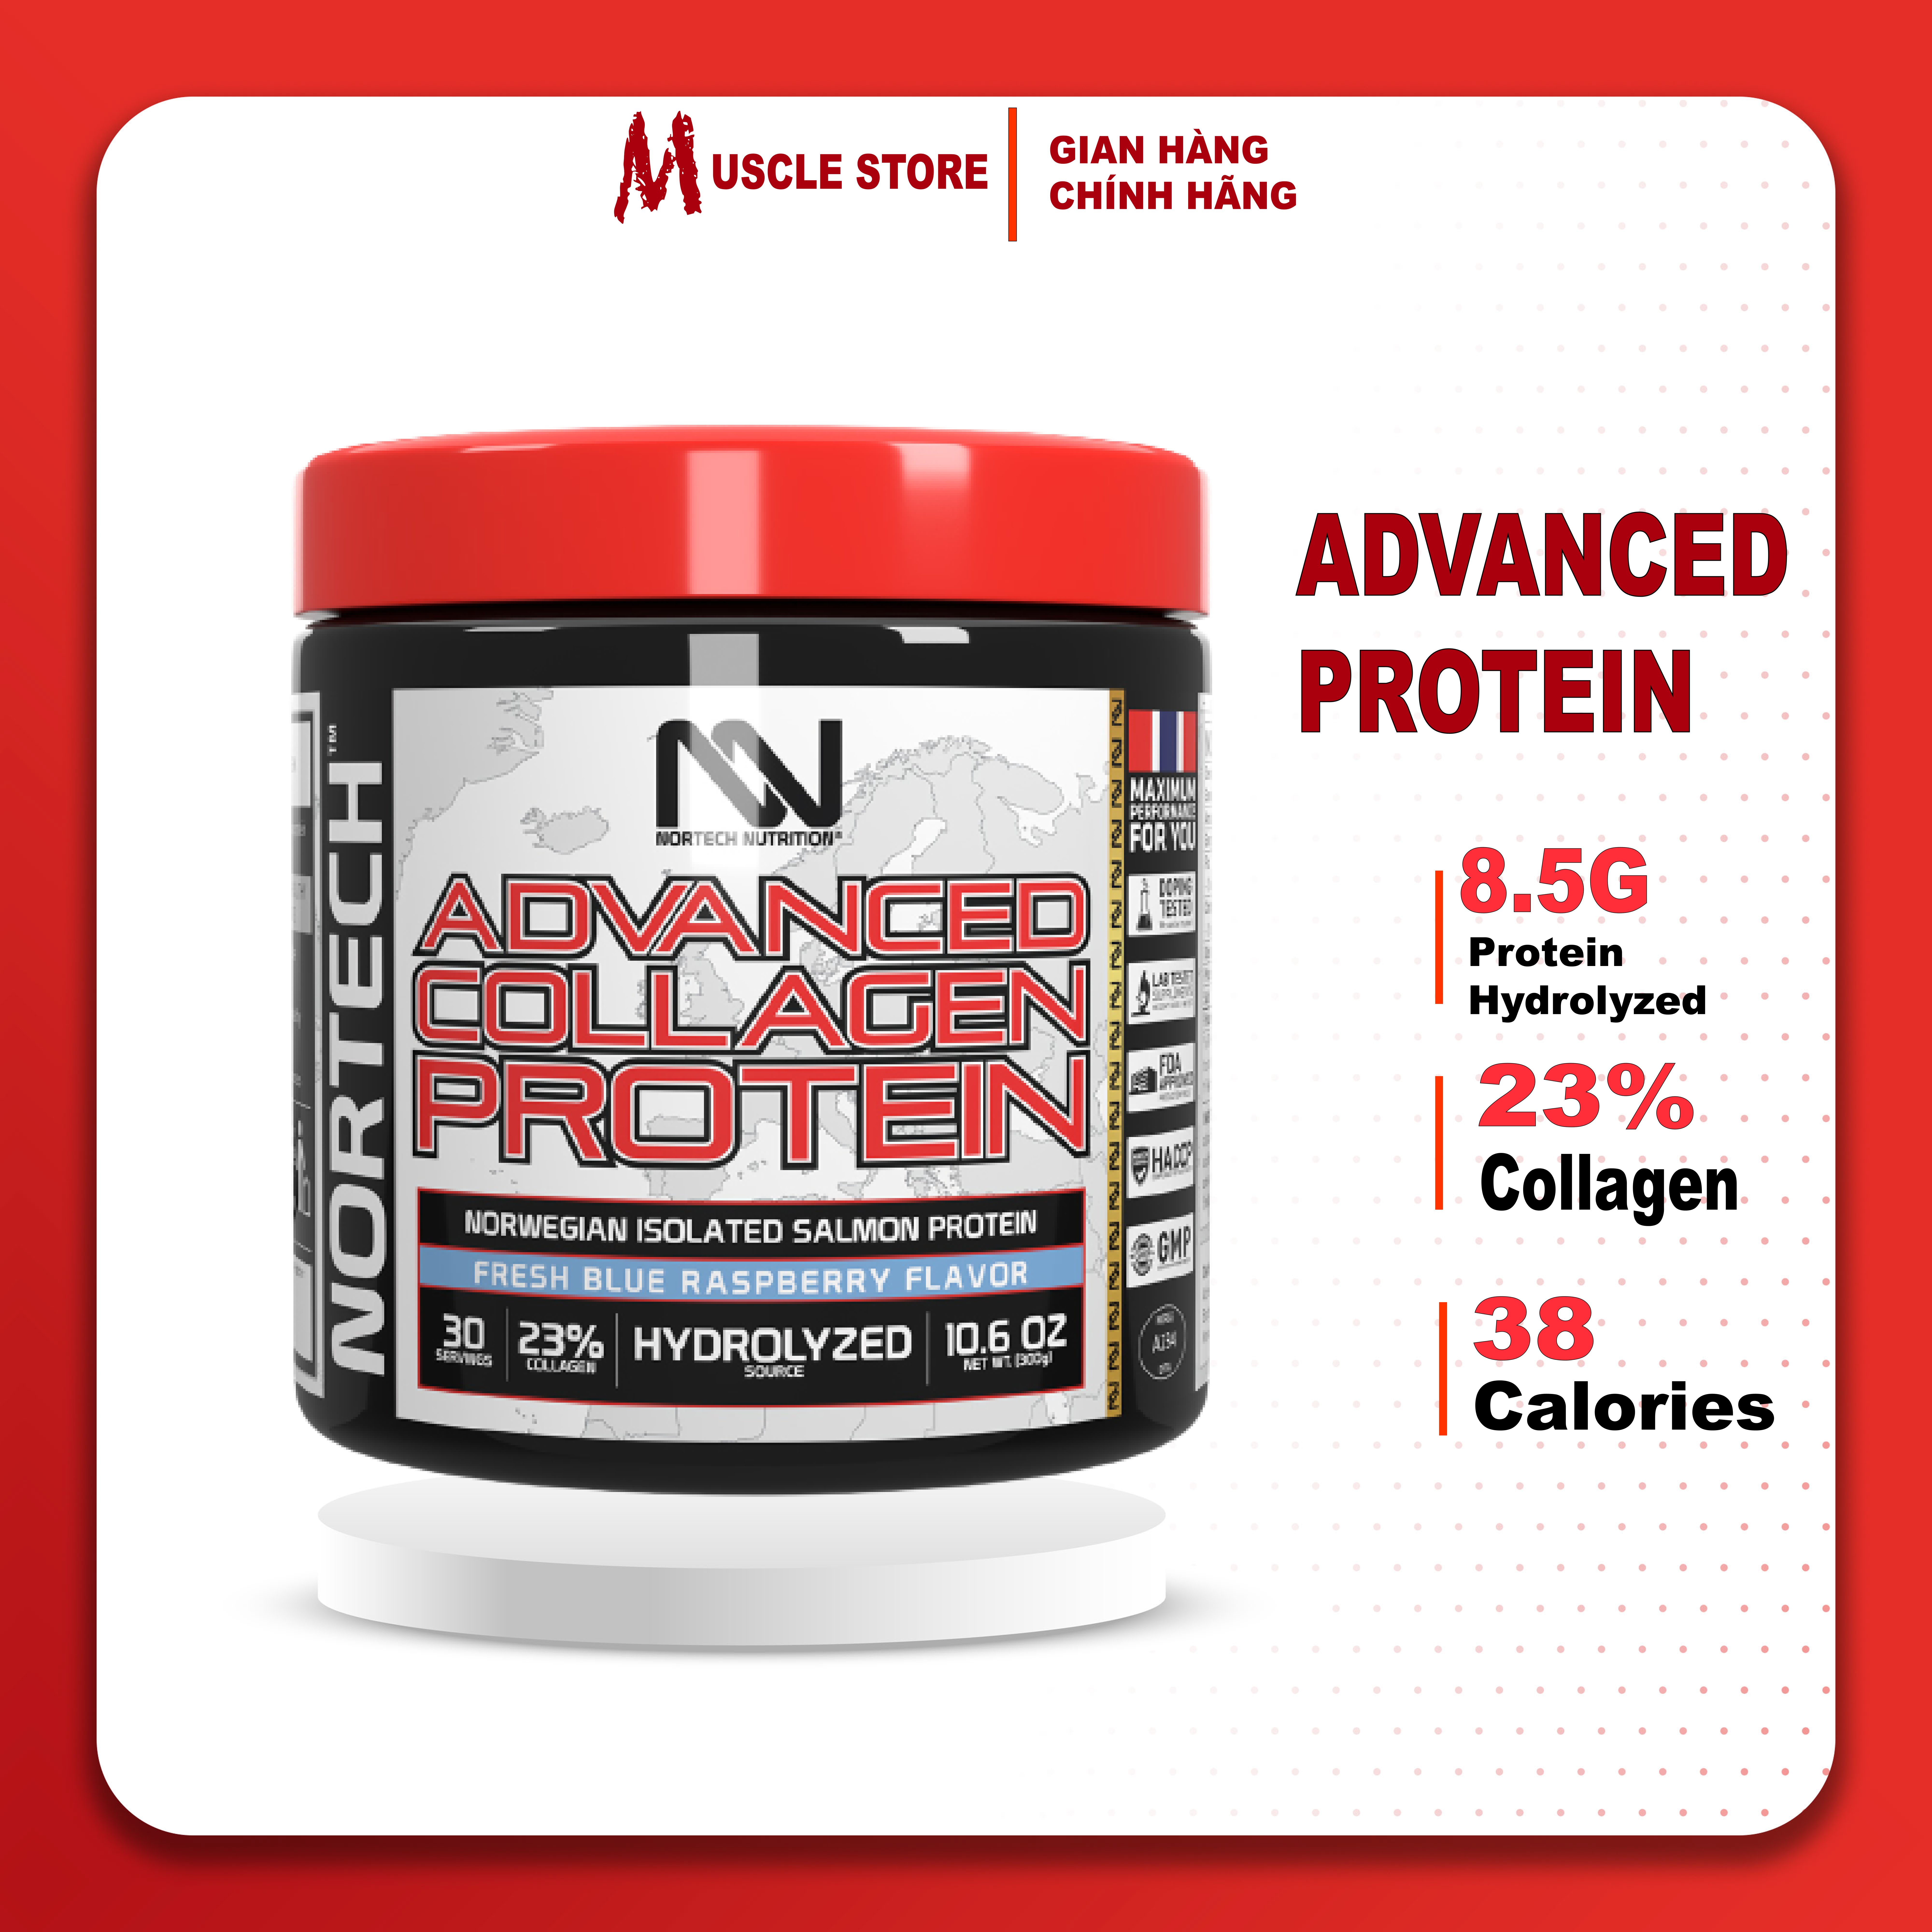 [Chính hãng] NorTech Advanced Collagen Protein (300G), Bổ Sung Protein Cá Hồi, Collagen, Đẹp Da & Ngăn Ngừa Lão Hóa